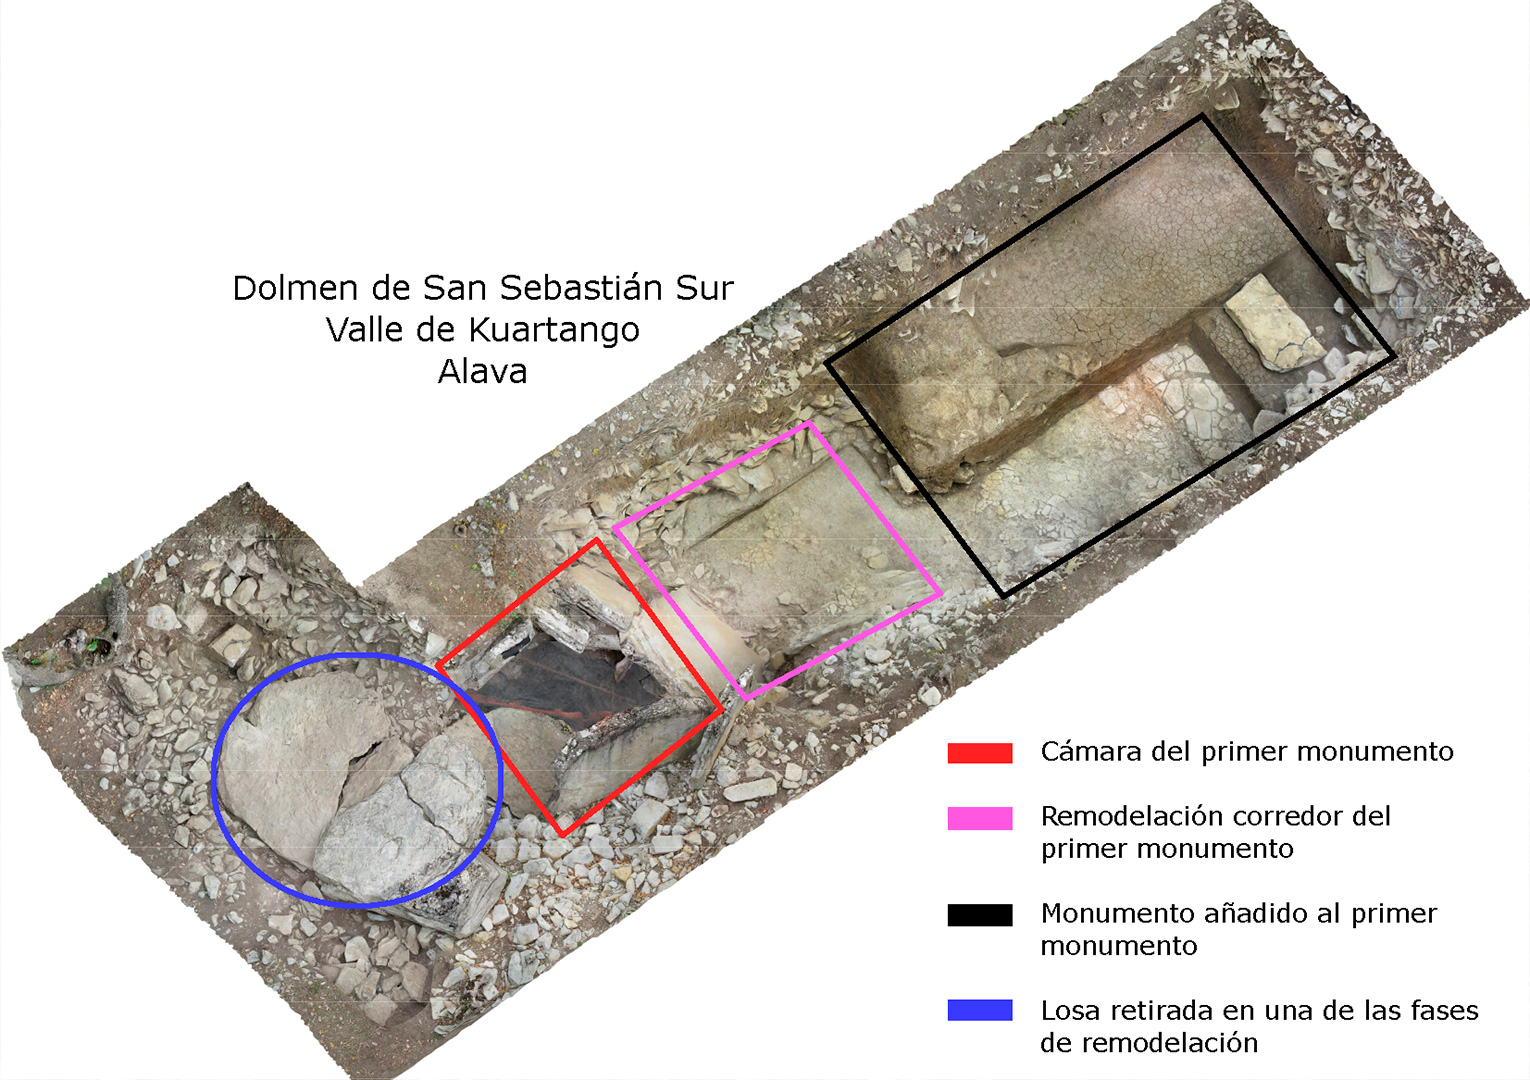 Los diferentes proyectos arquitectónicos en el dolmen de San Sebastián Sur.